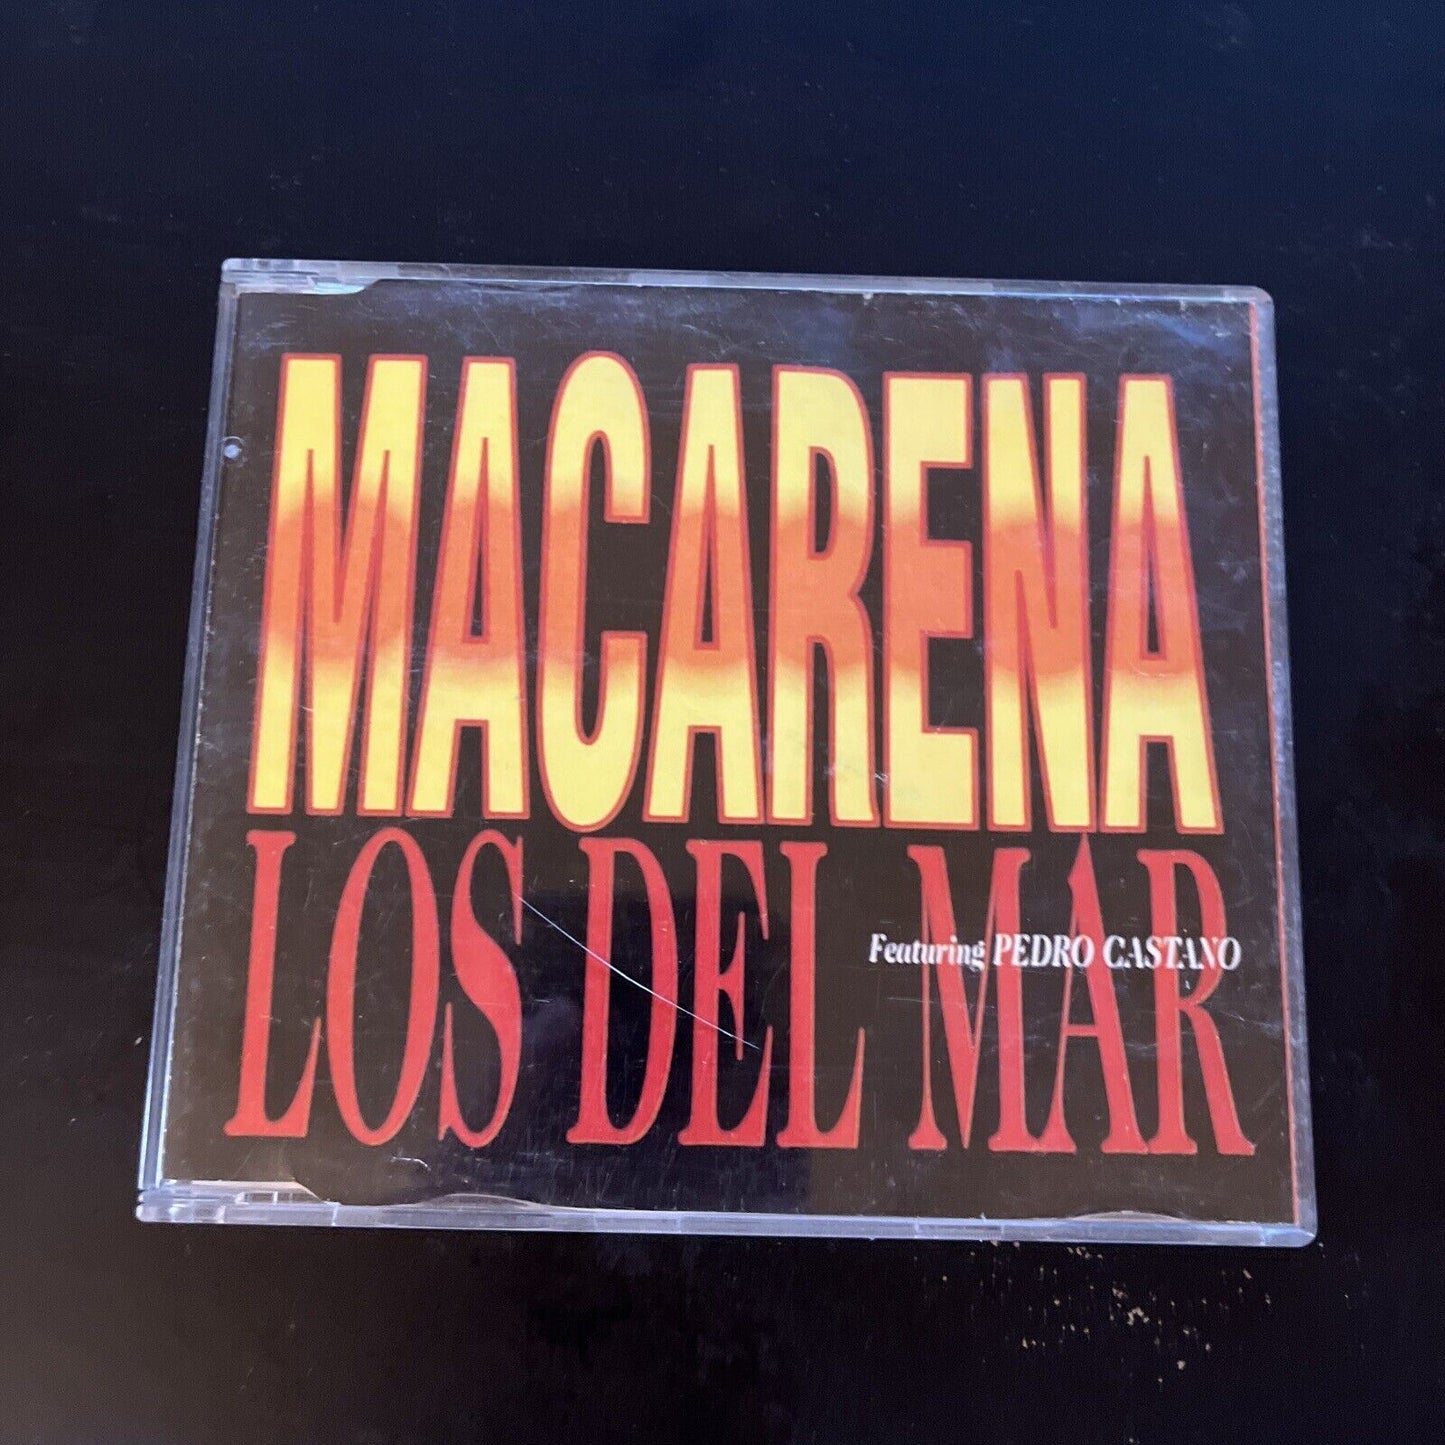 Los Del Mar - Macarena (CD, 1996) Single